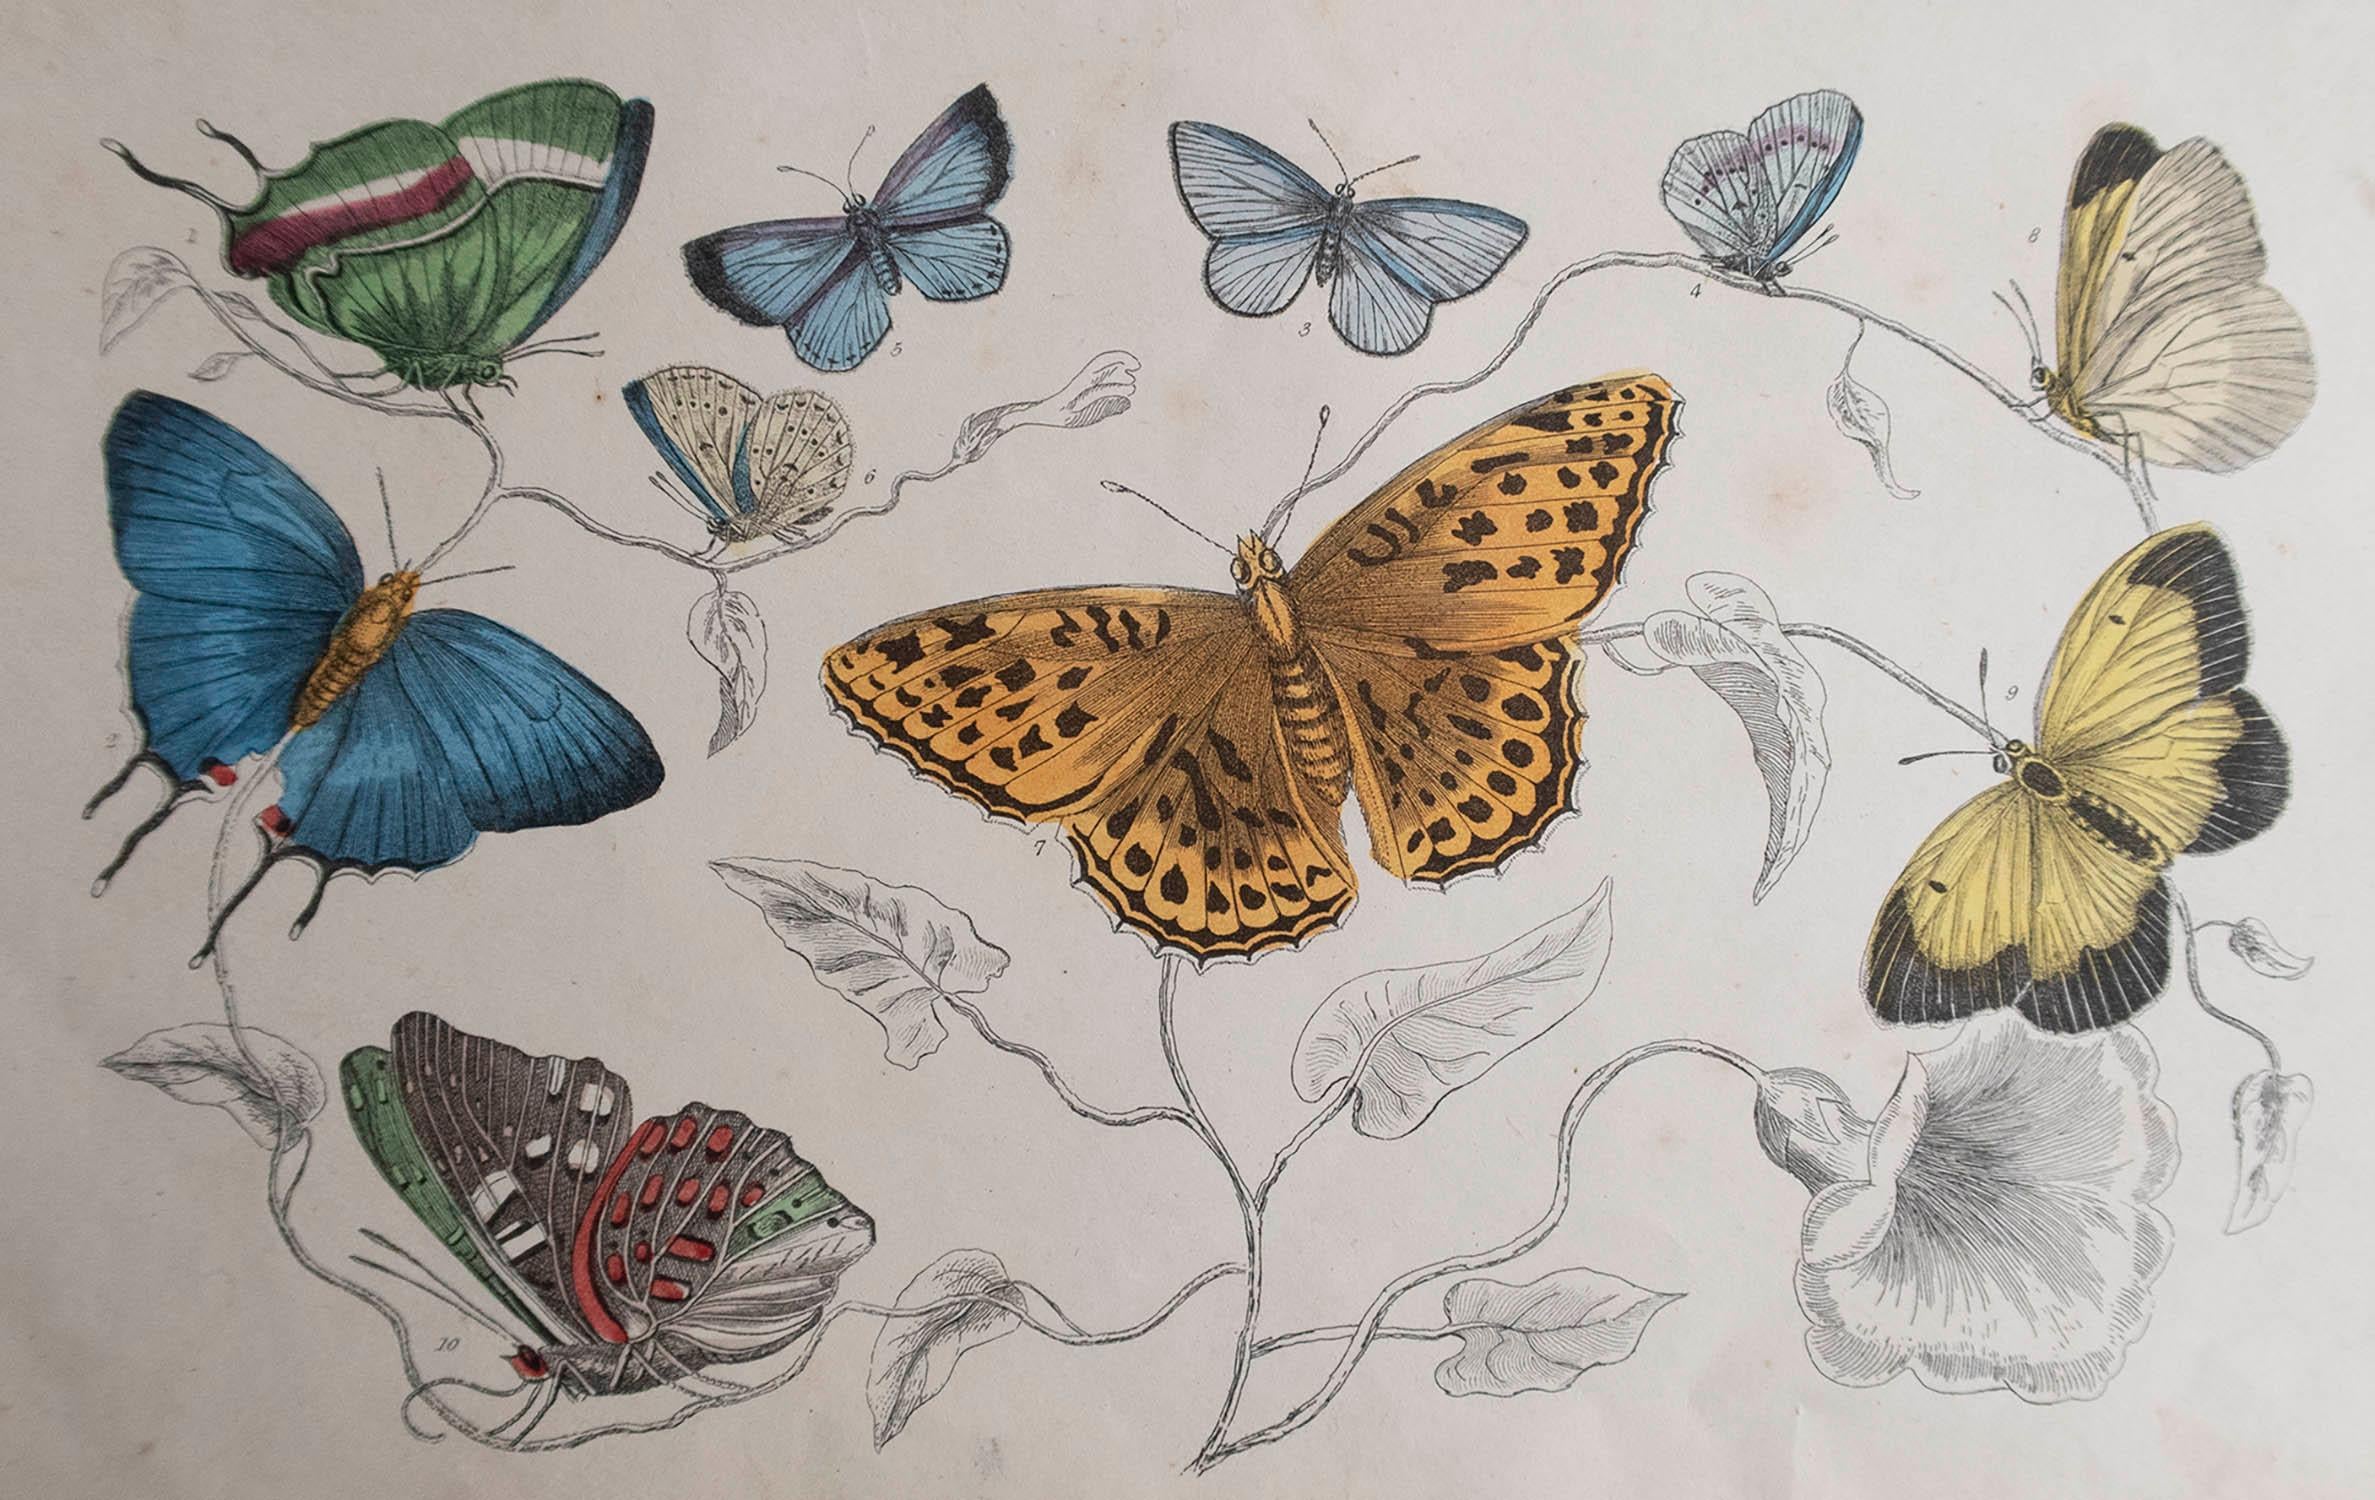 Tolles Bild von Schmetterlingen.

Ungerahmt. So haben Sie die Möglichkeit, Ihre eigene Auswahl an Rahmen zu treffen.

Lithographie nach Cpt. Braun mit Original-Handkolorit.

Veröffentlicht, 1847.